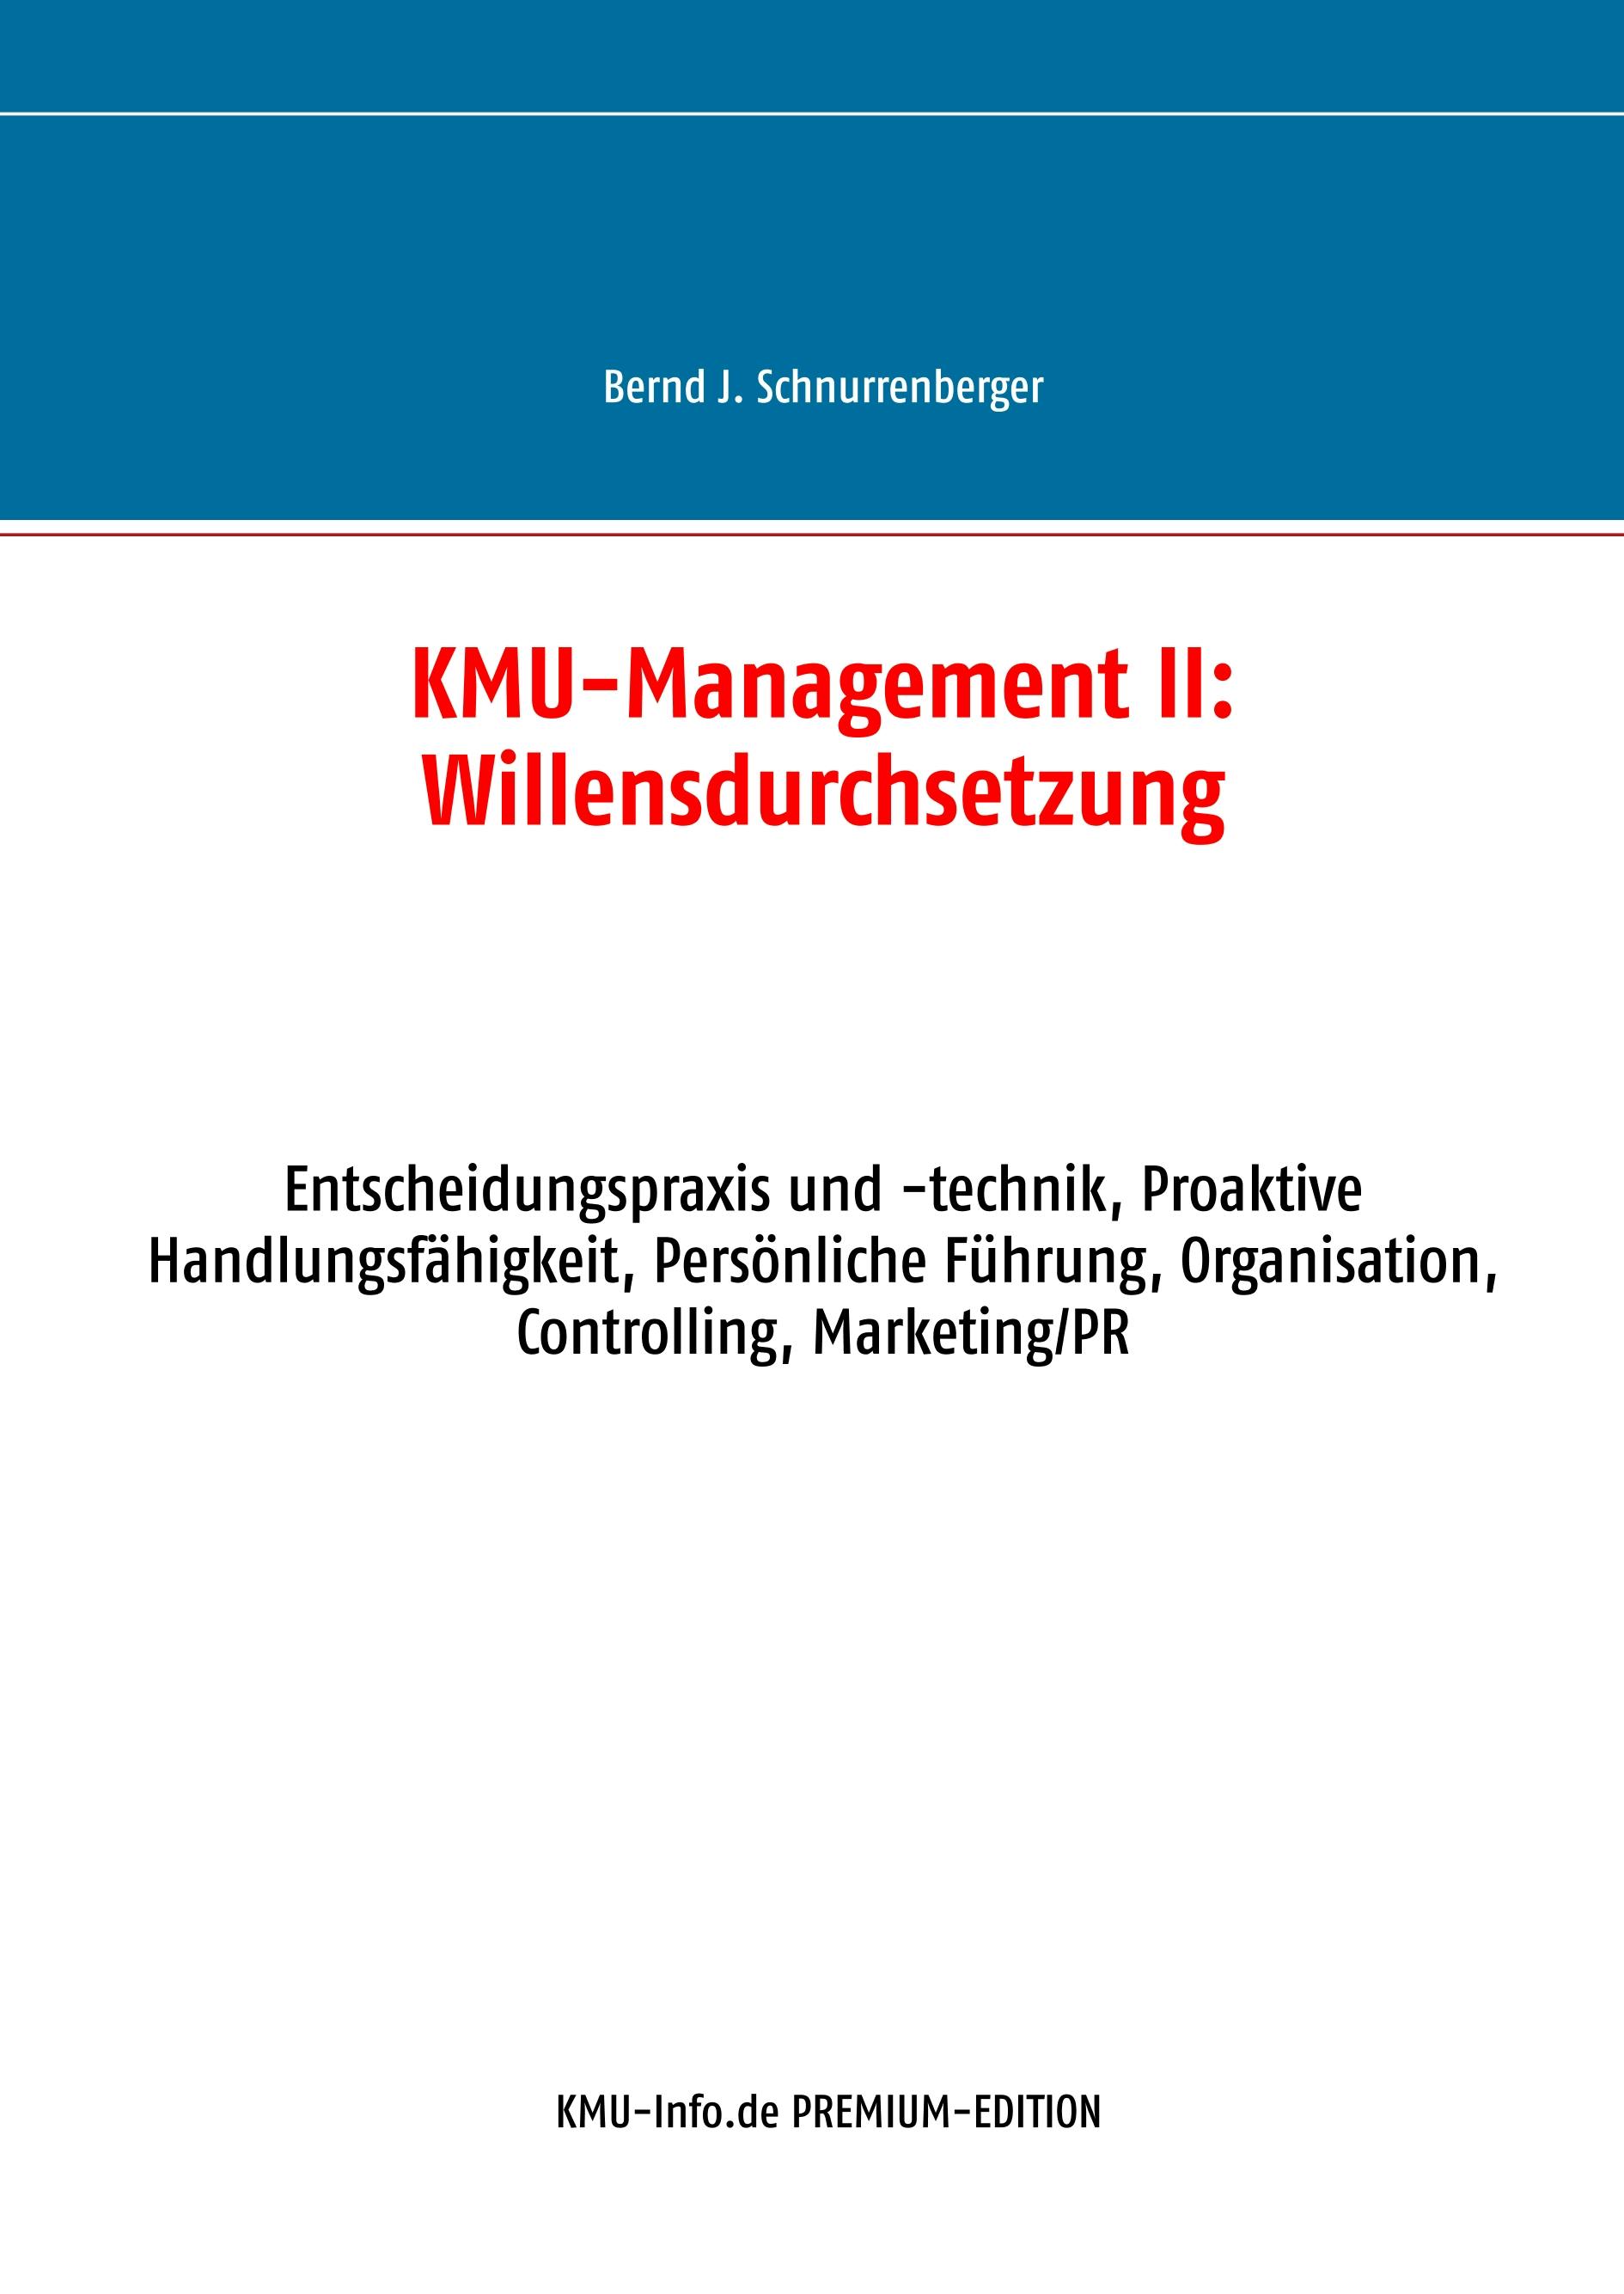 KMU-Management II: Willensdurchsetzung - Bernd J. Schnurrenberger